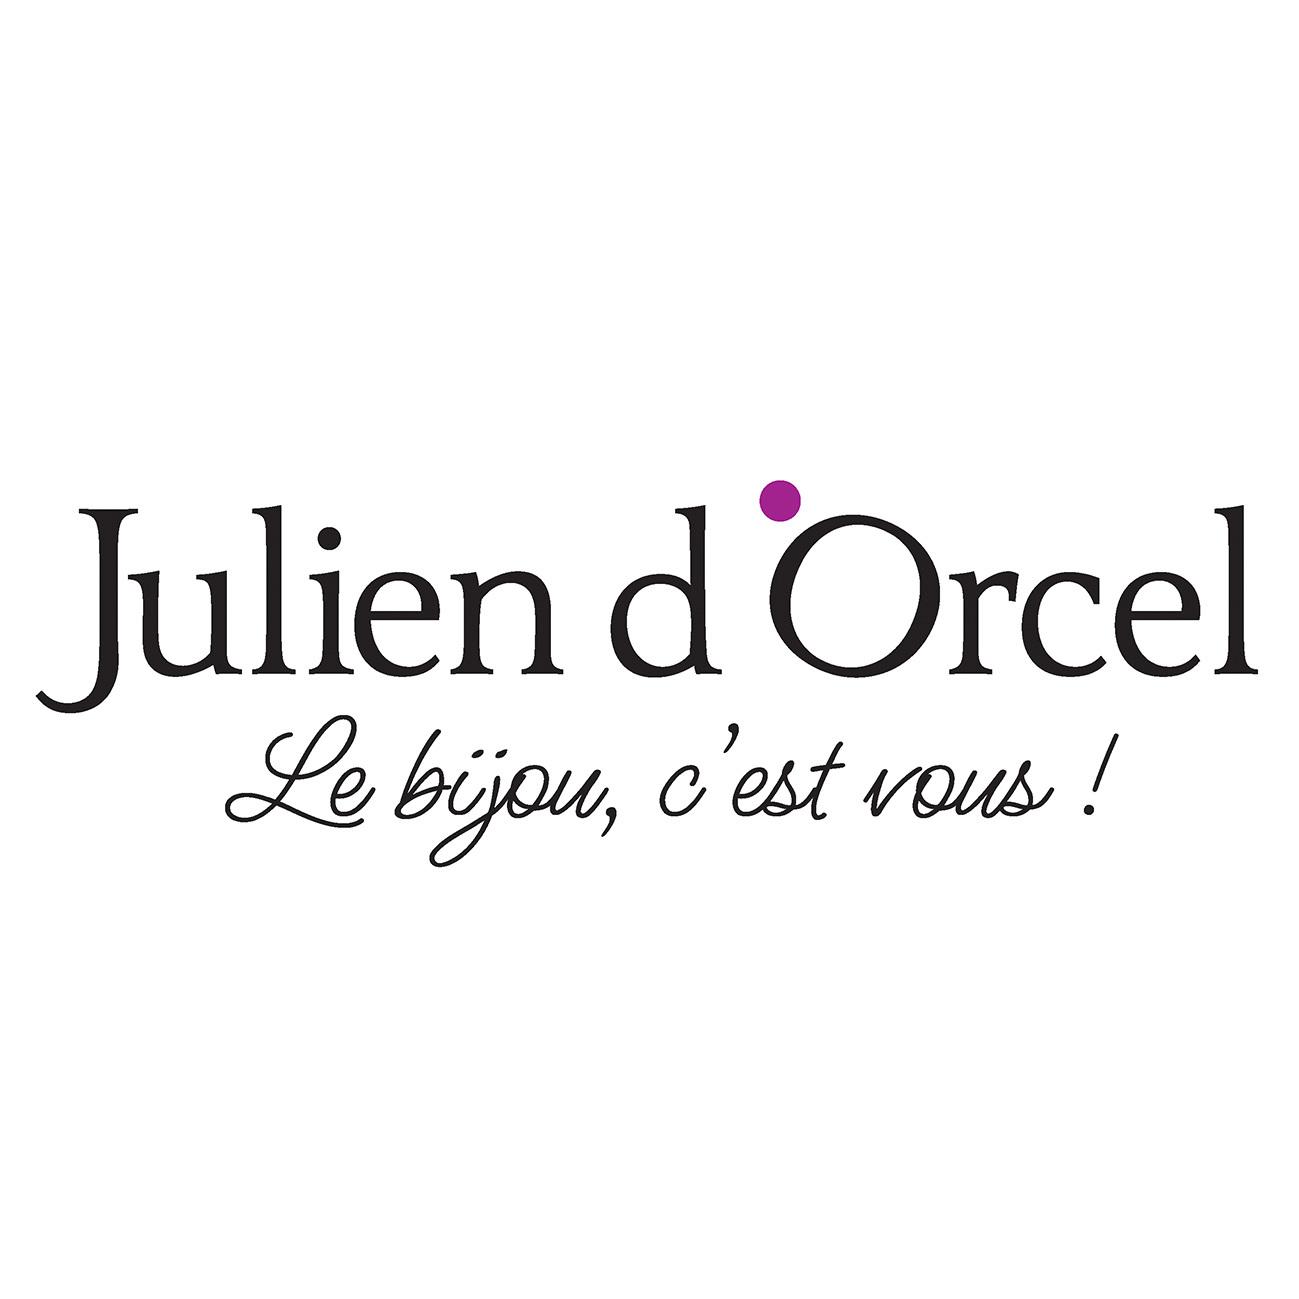 Julien D'orcel Aix Les Bains